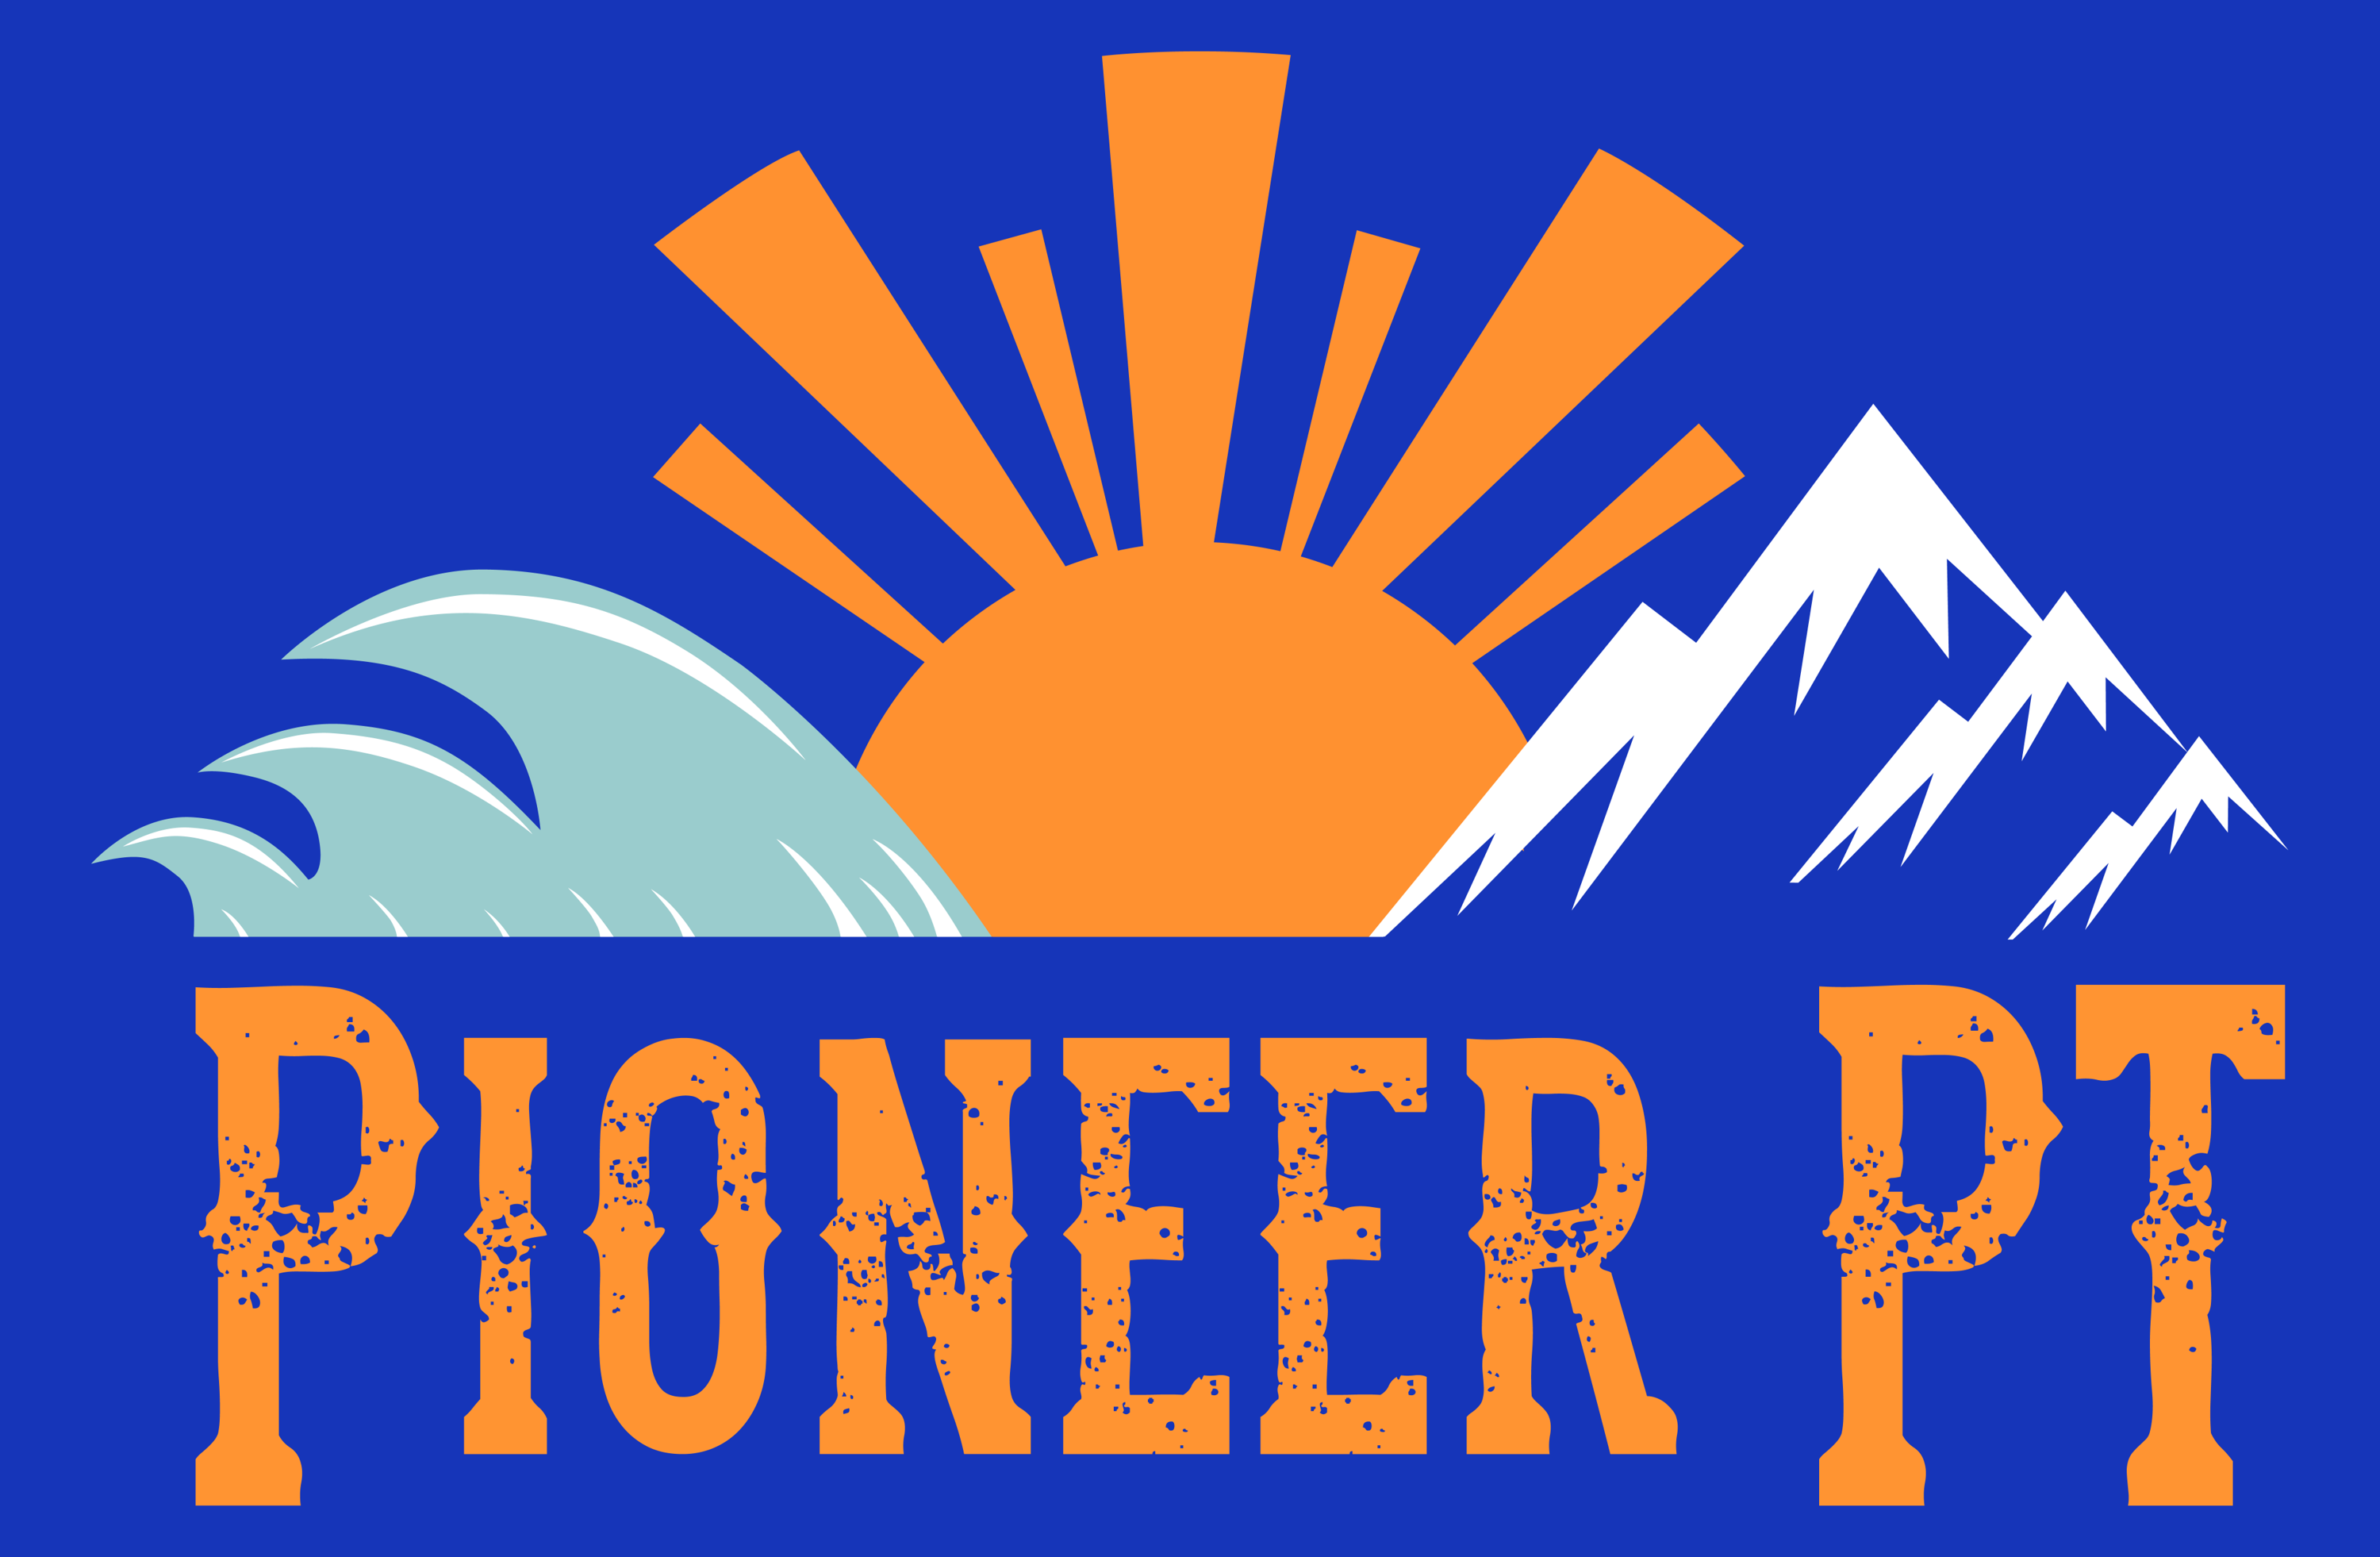 Pioneer PT